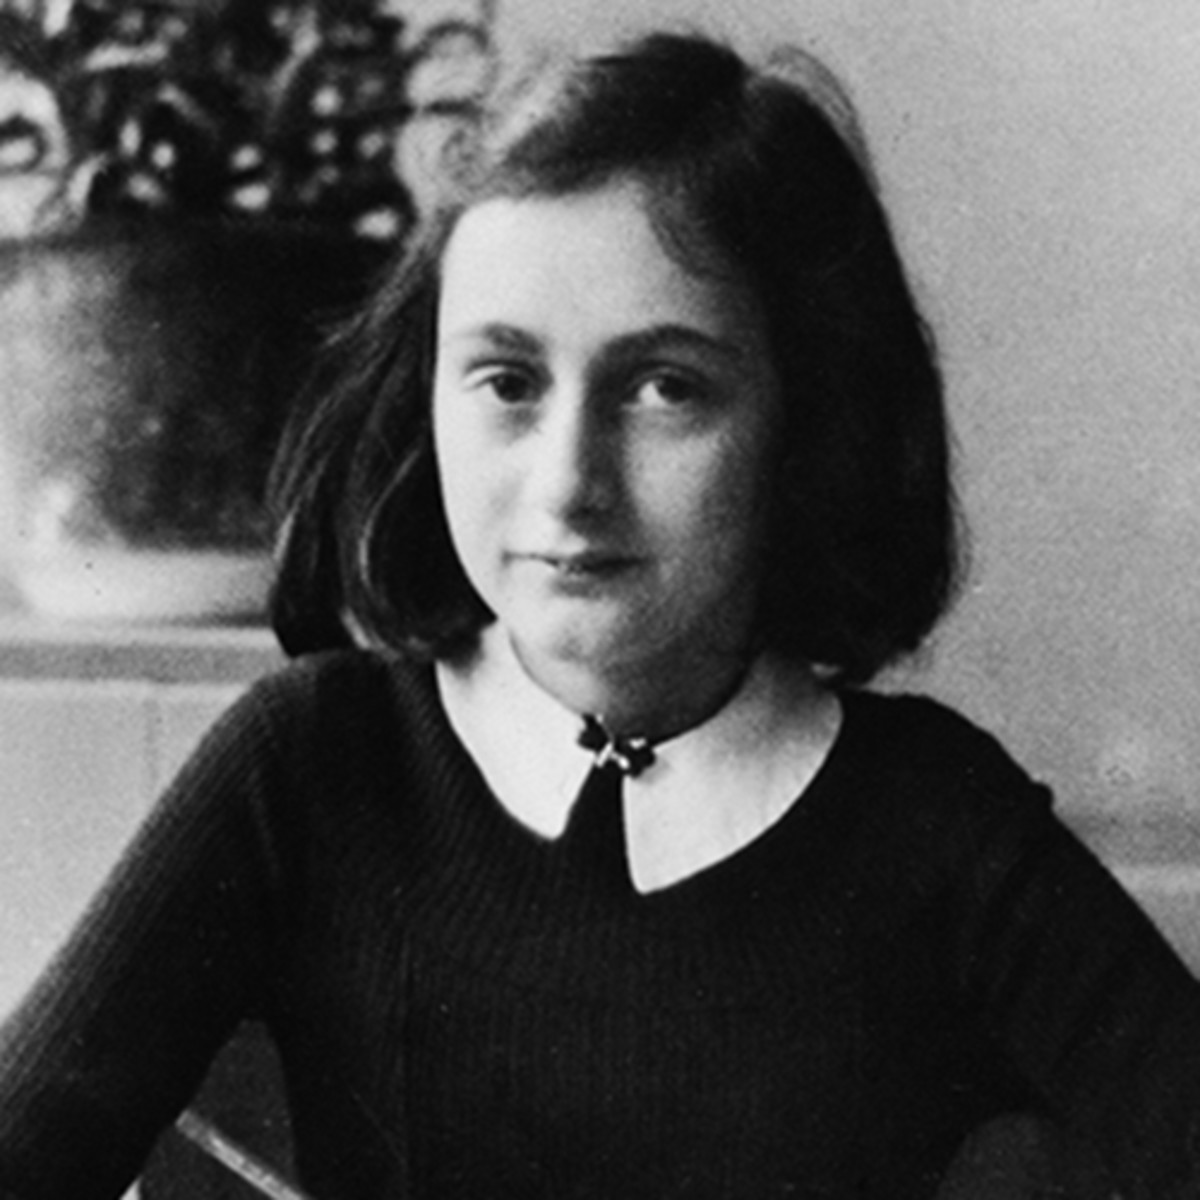 Quiz Answers Beginning With A Anne Frank Photo By Adn Bildarchivullstein Bild Via Getty Images